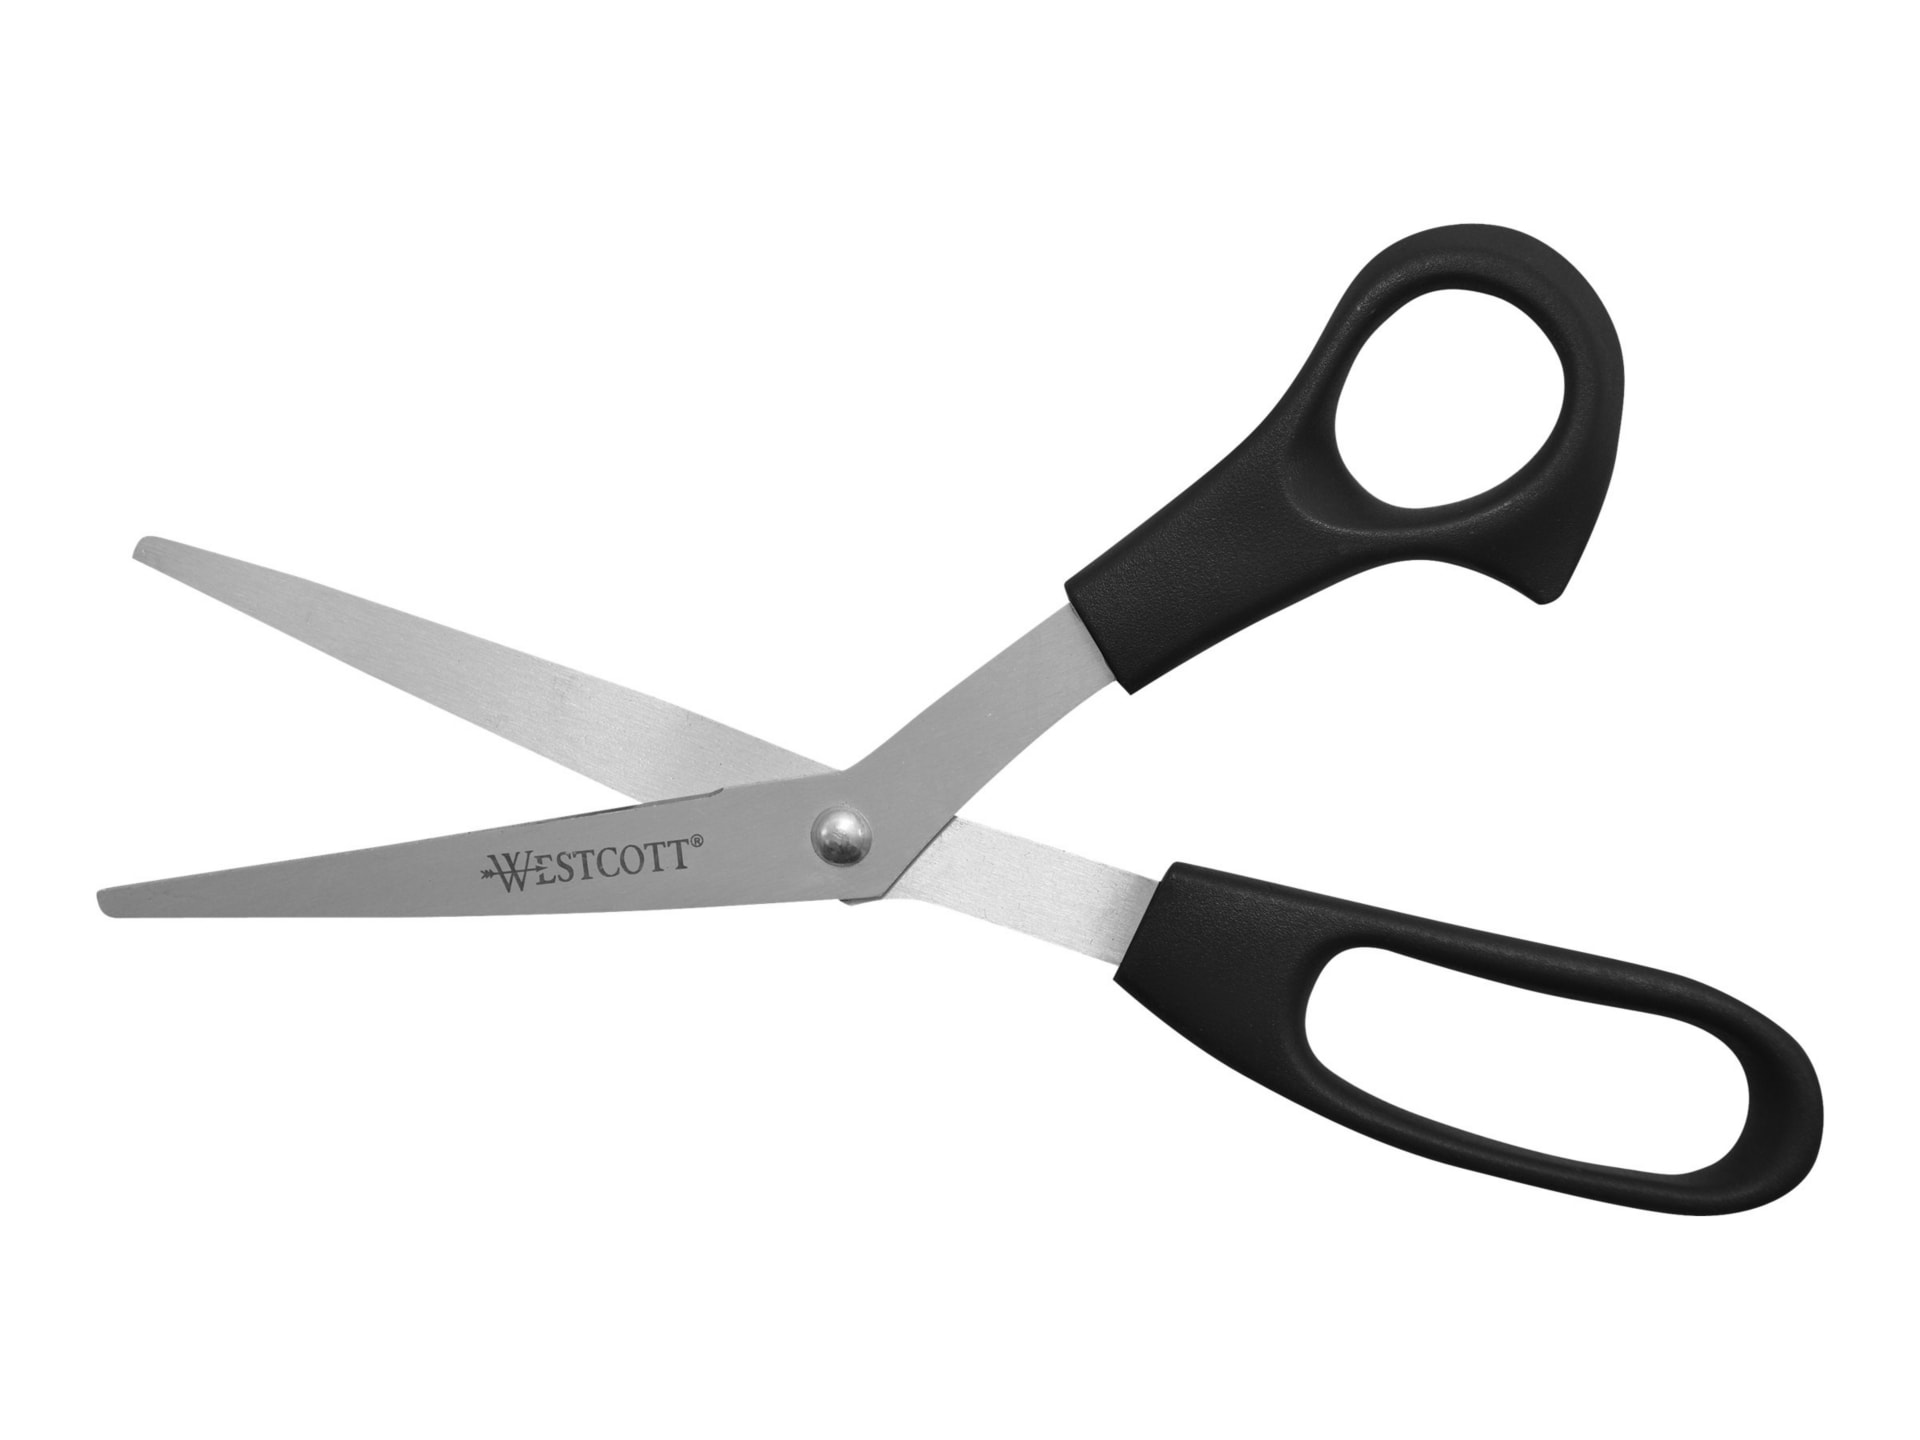 Westcott Bent All Purpose - scissors